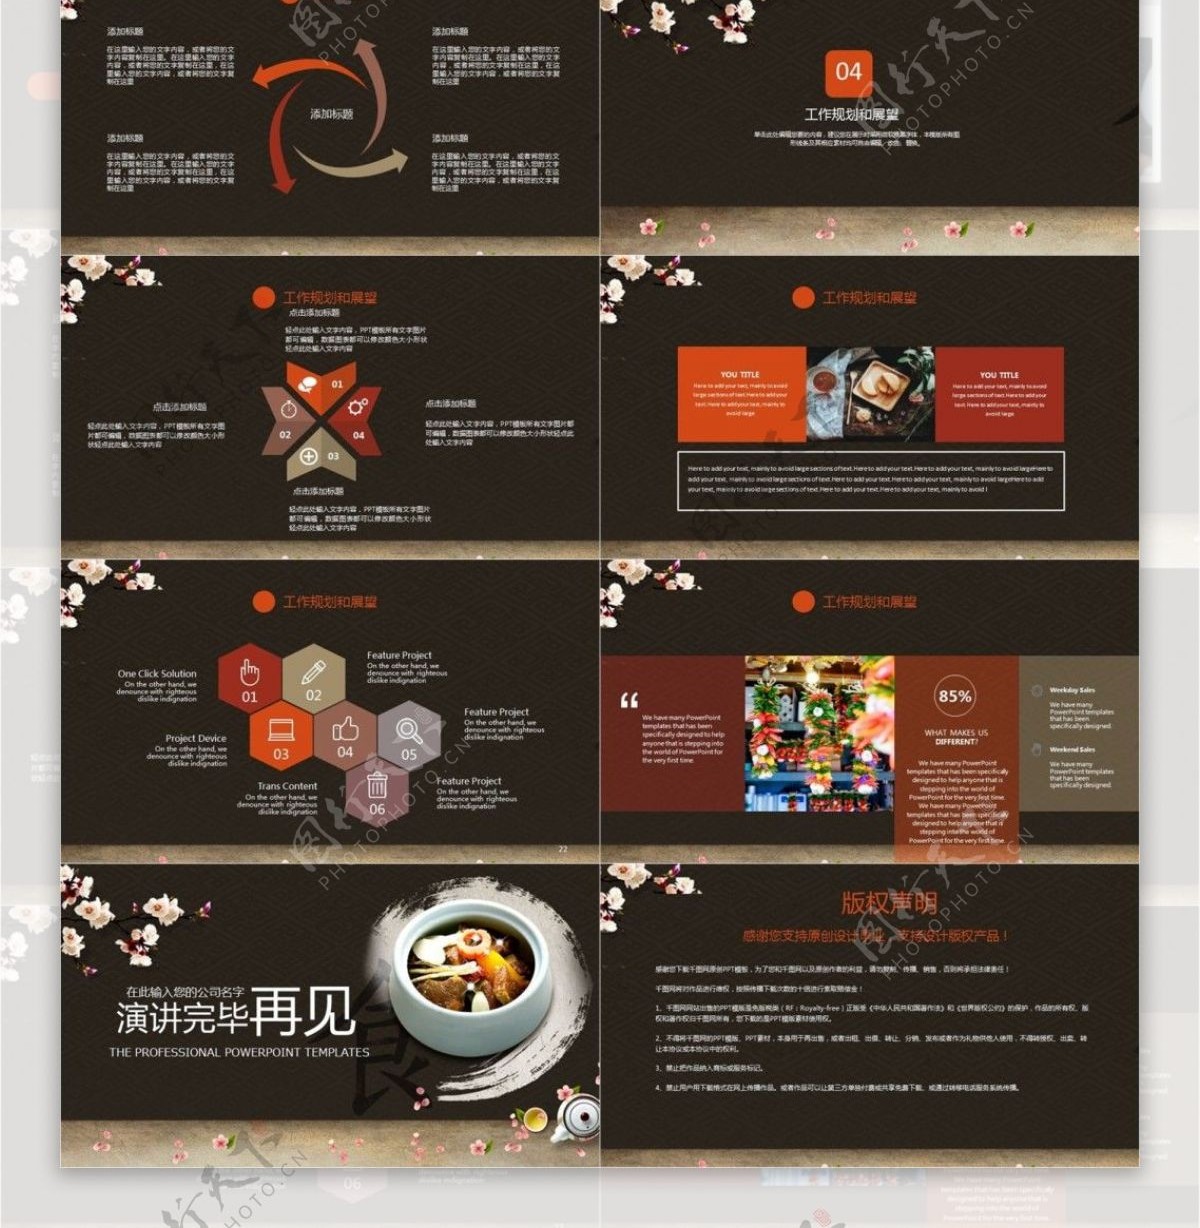 中国传统美食文化餐饮宣传介绍PPT模板